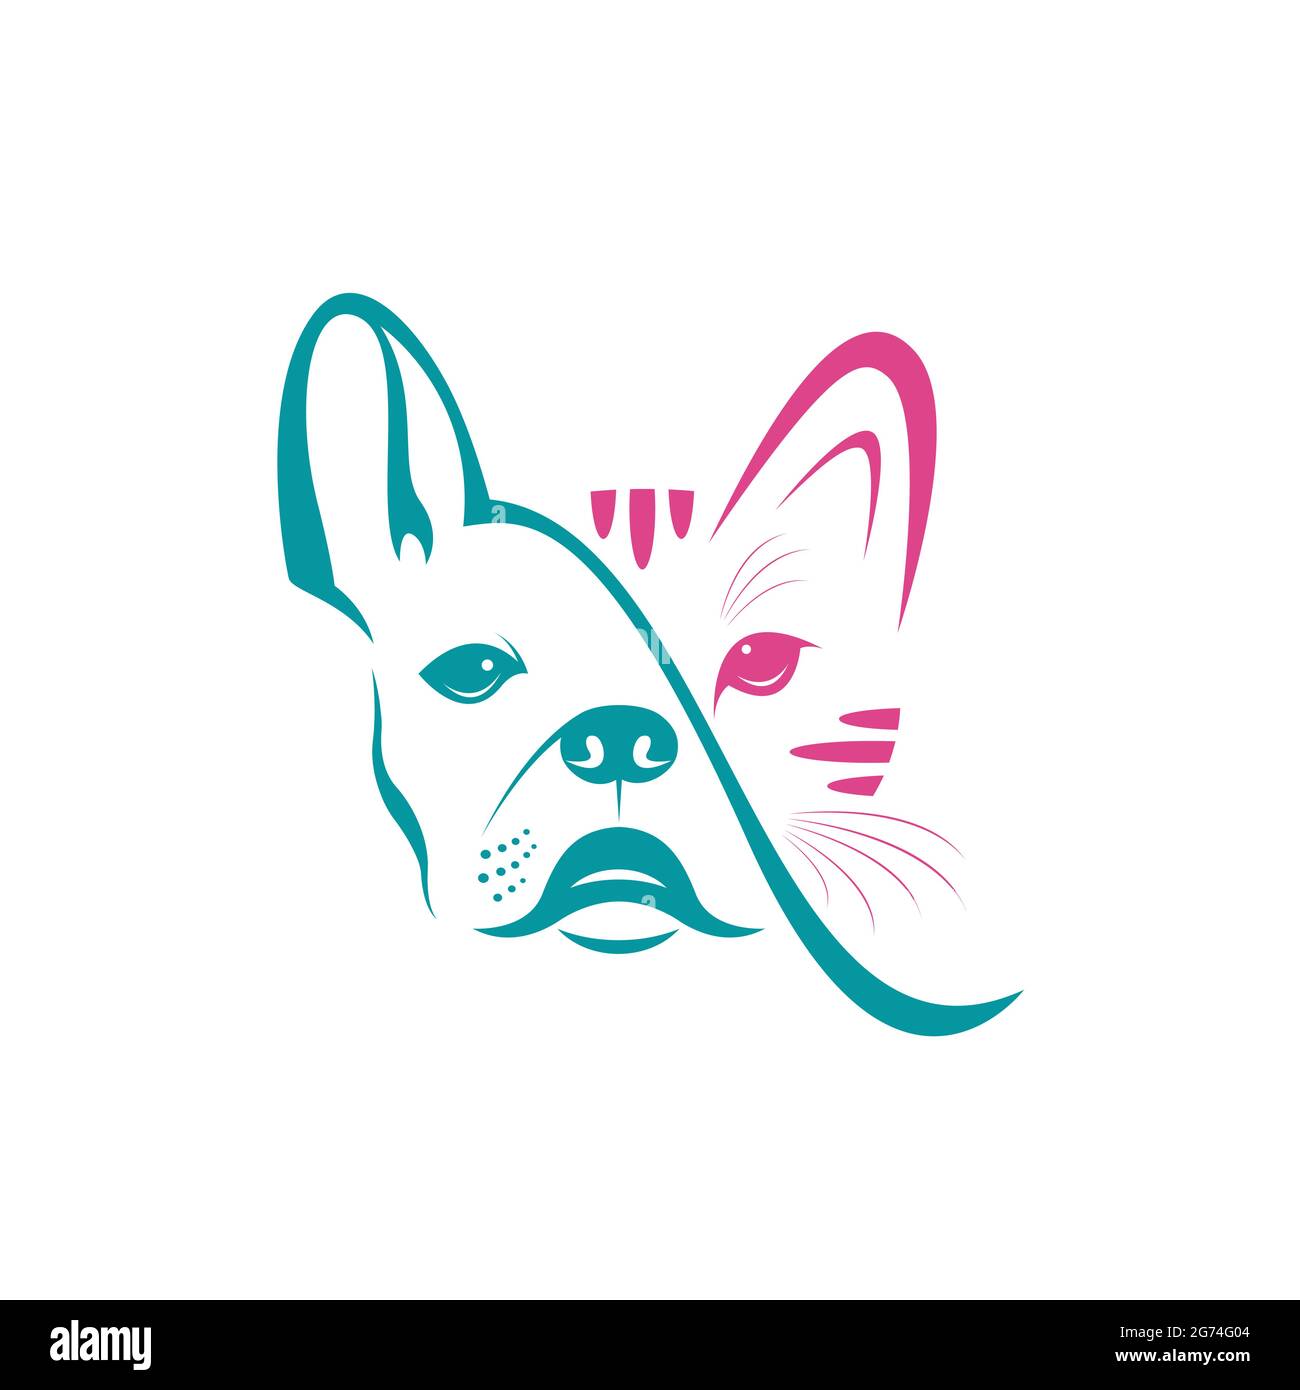 Diseño de vector de cara de perro y cara de gato sobre fondo blanco.  Mascota. Animal. Logotipo o icono de perro y gato. Ilustración de vector en  capas fácil de editar. Bulldo